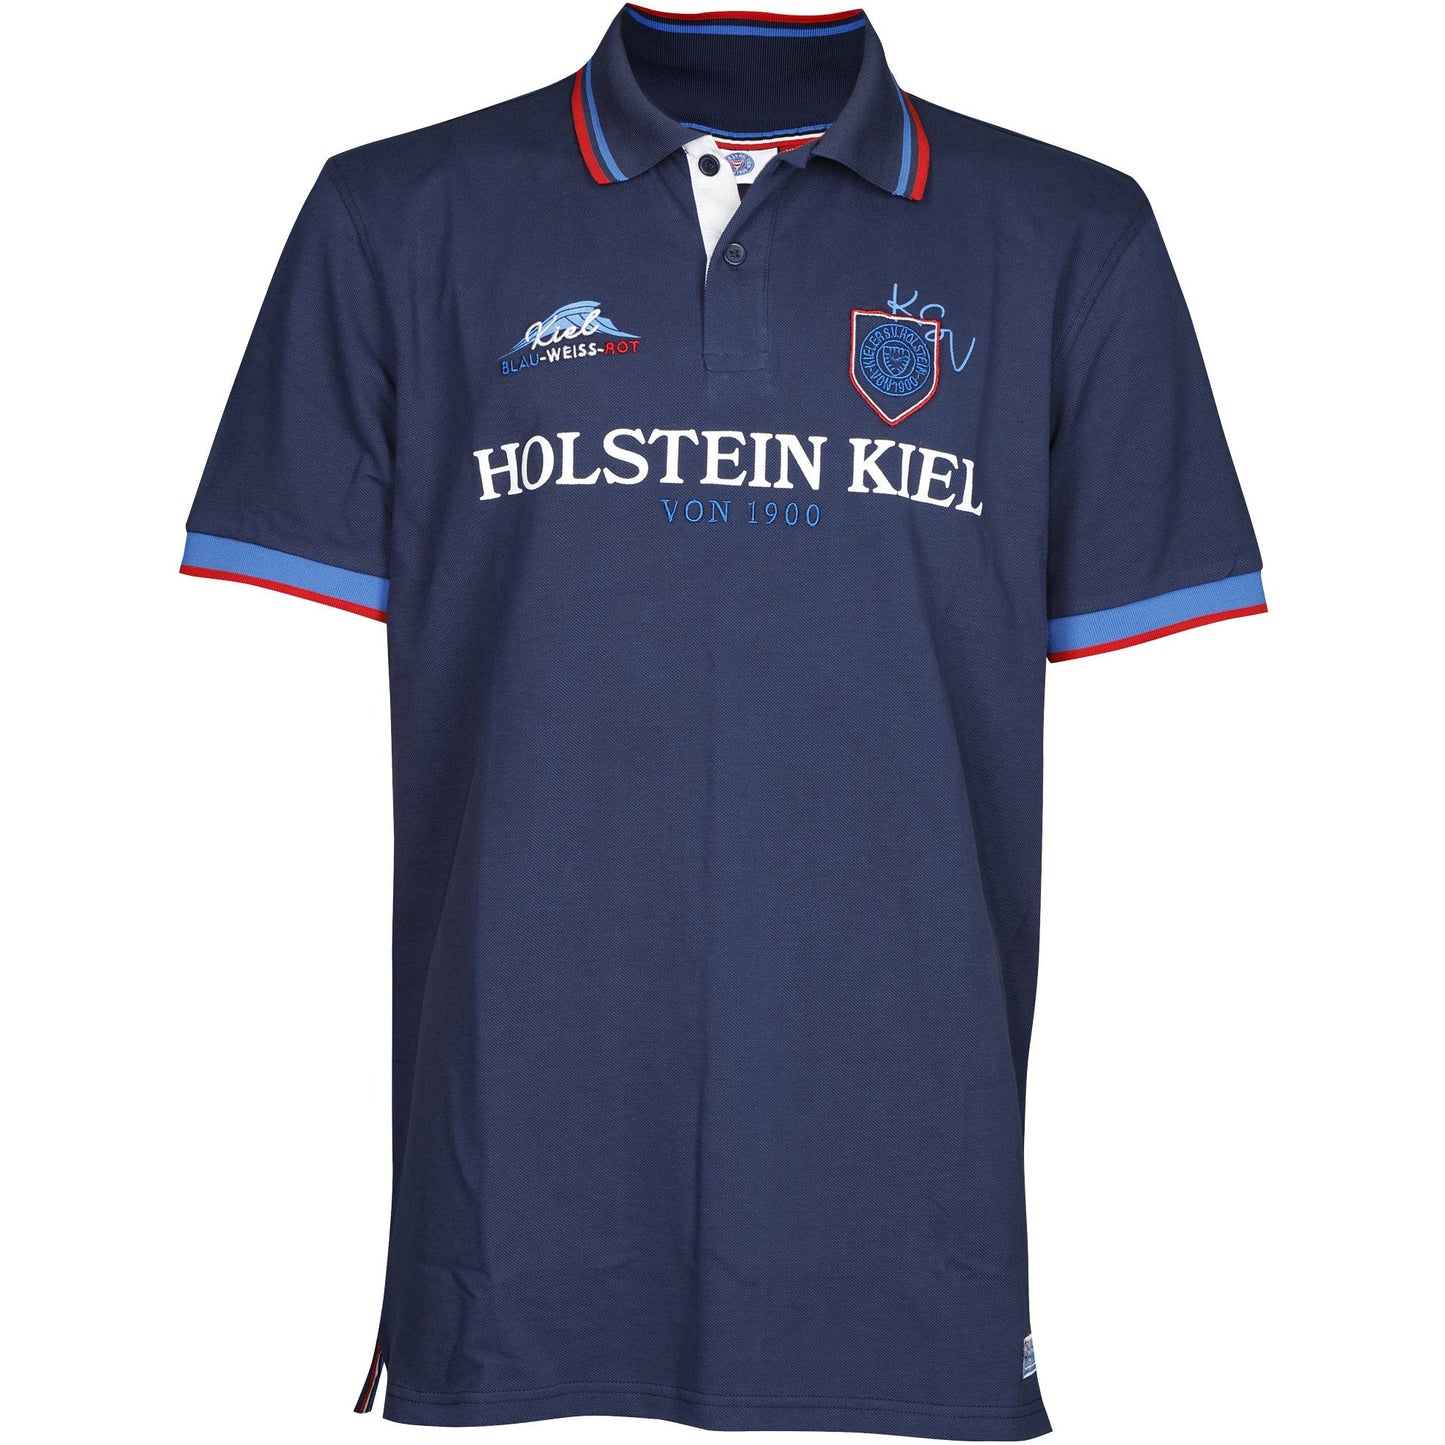 Holstein Kiel Polo Shirt Fehmarn